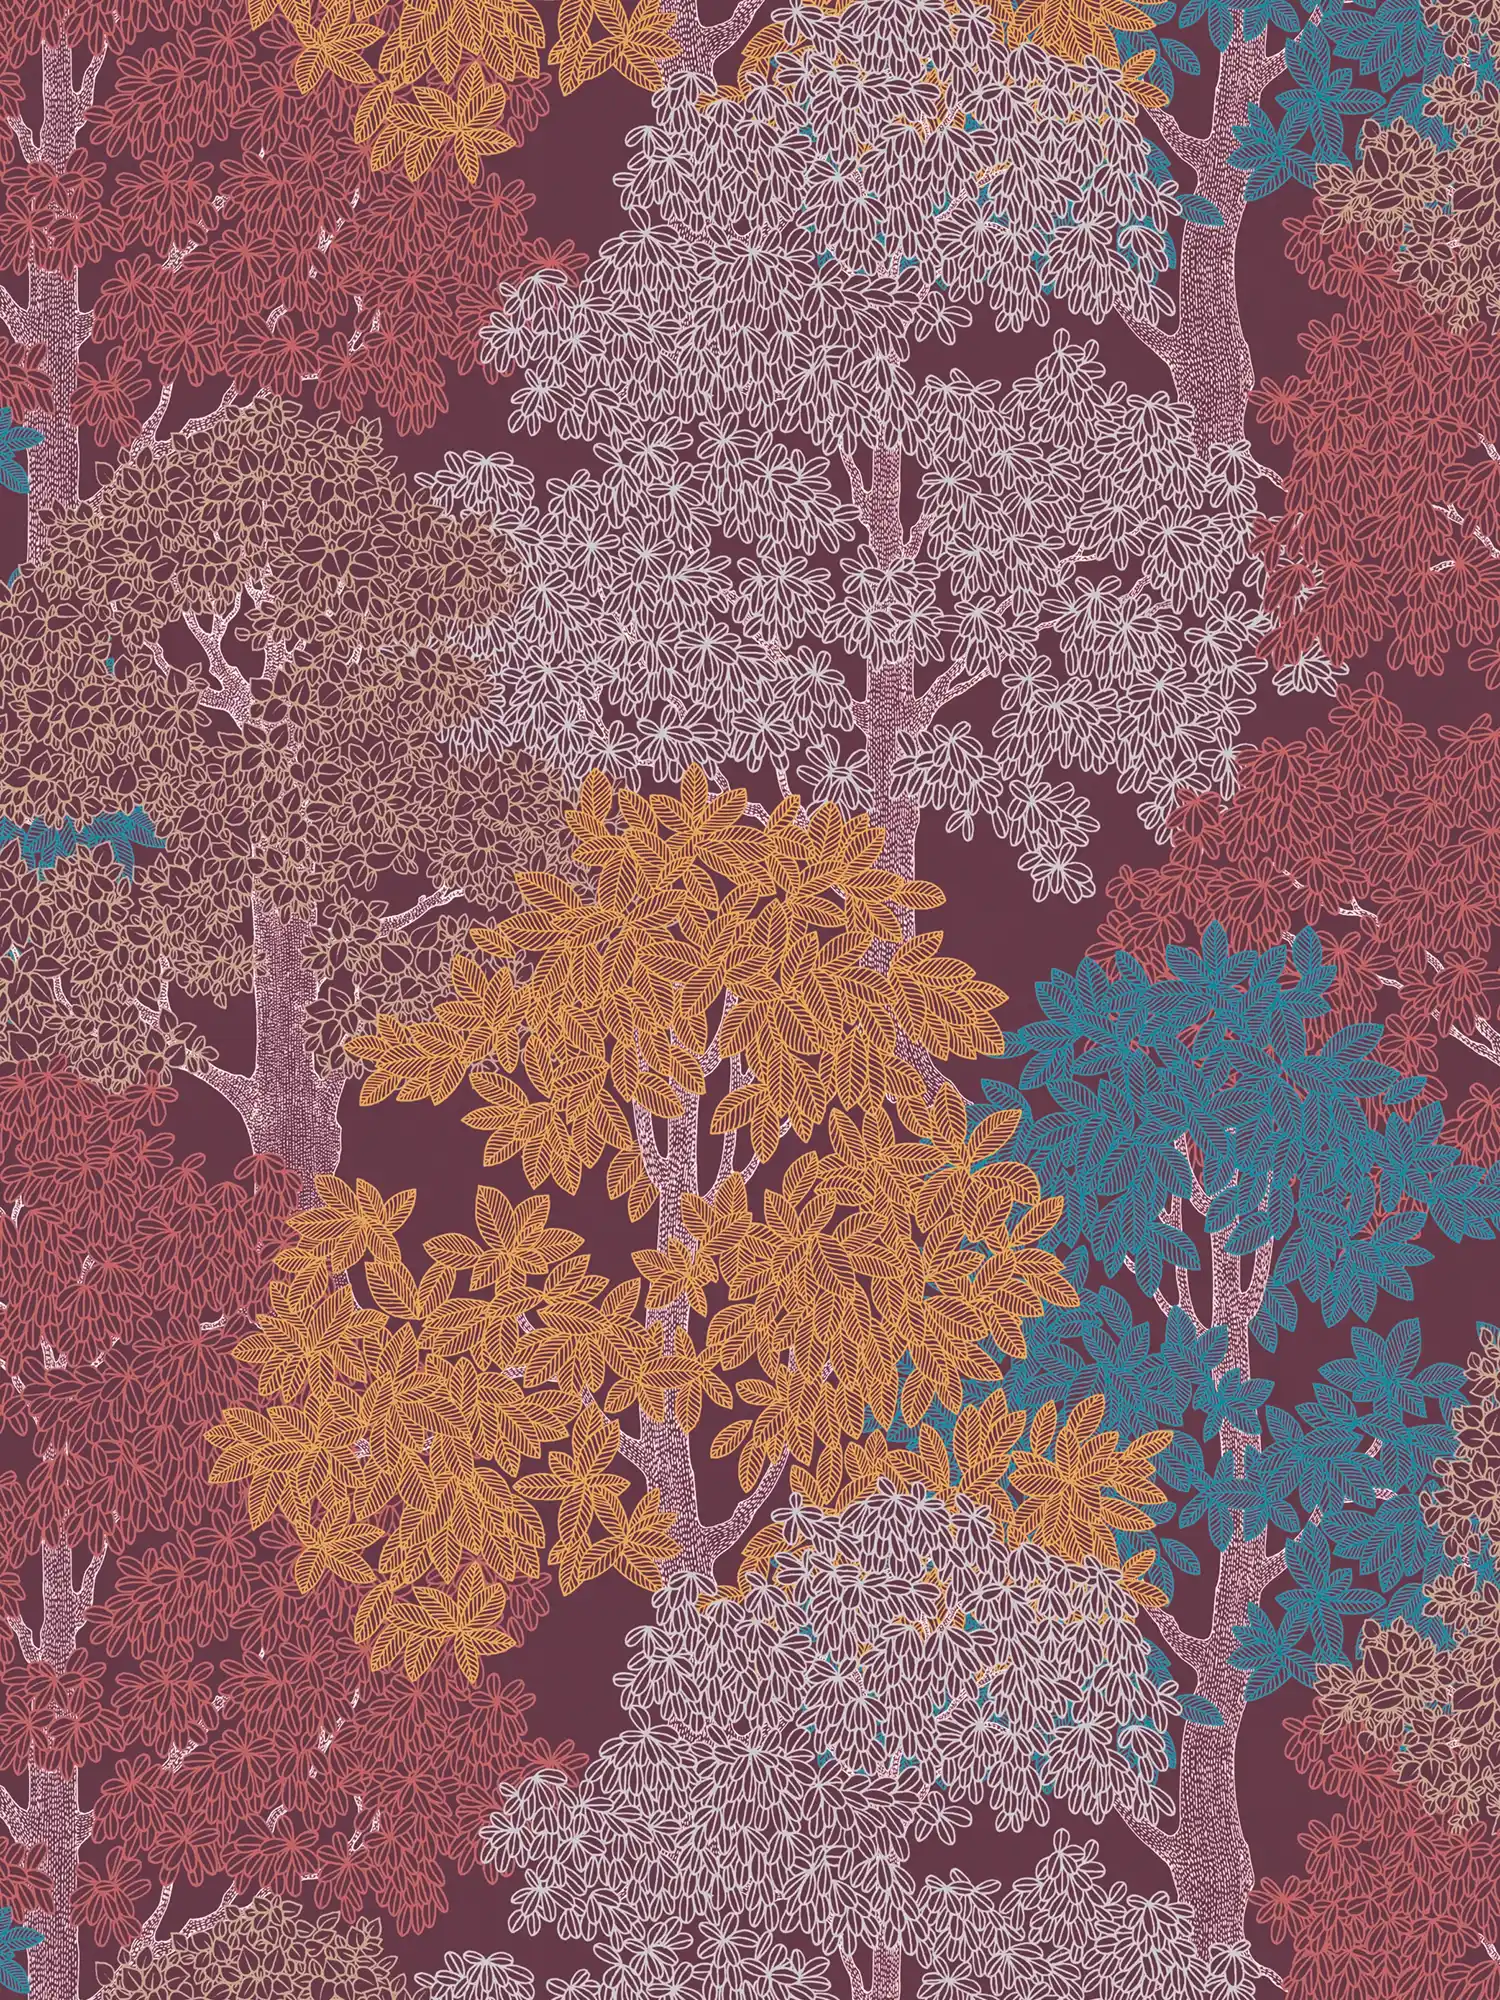         Behang wijnrood met bospatroon & bomen in tekenstijl - paars, rood, geel
    